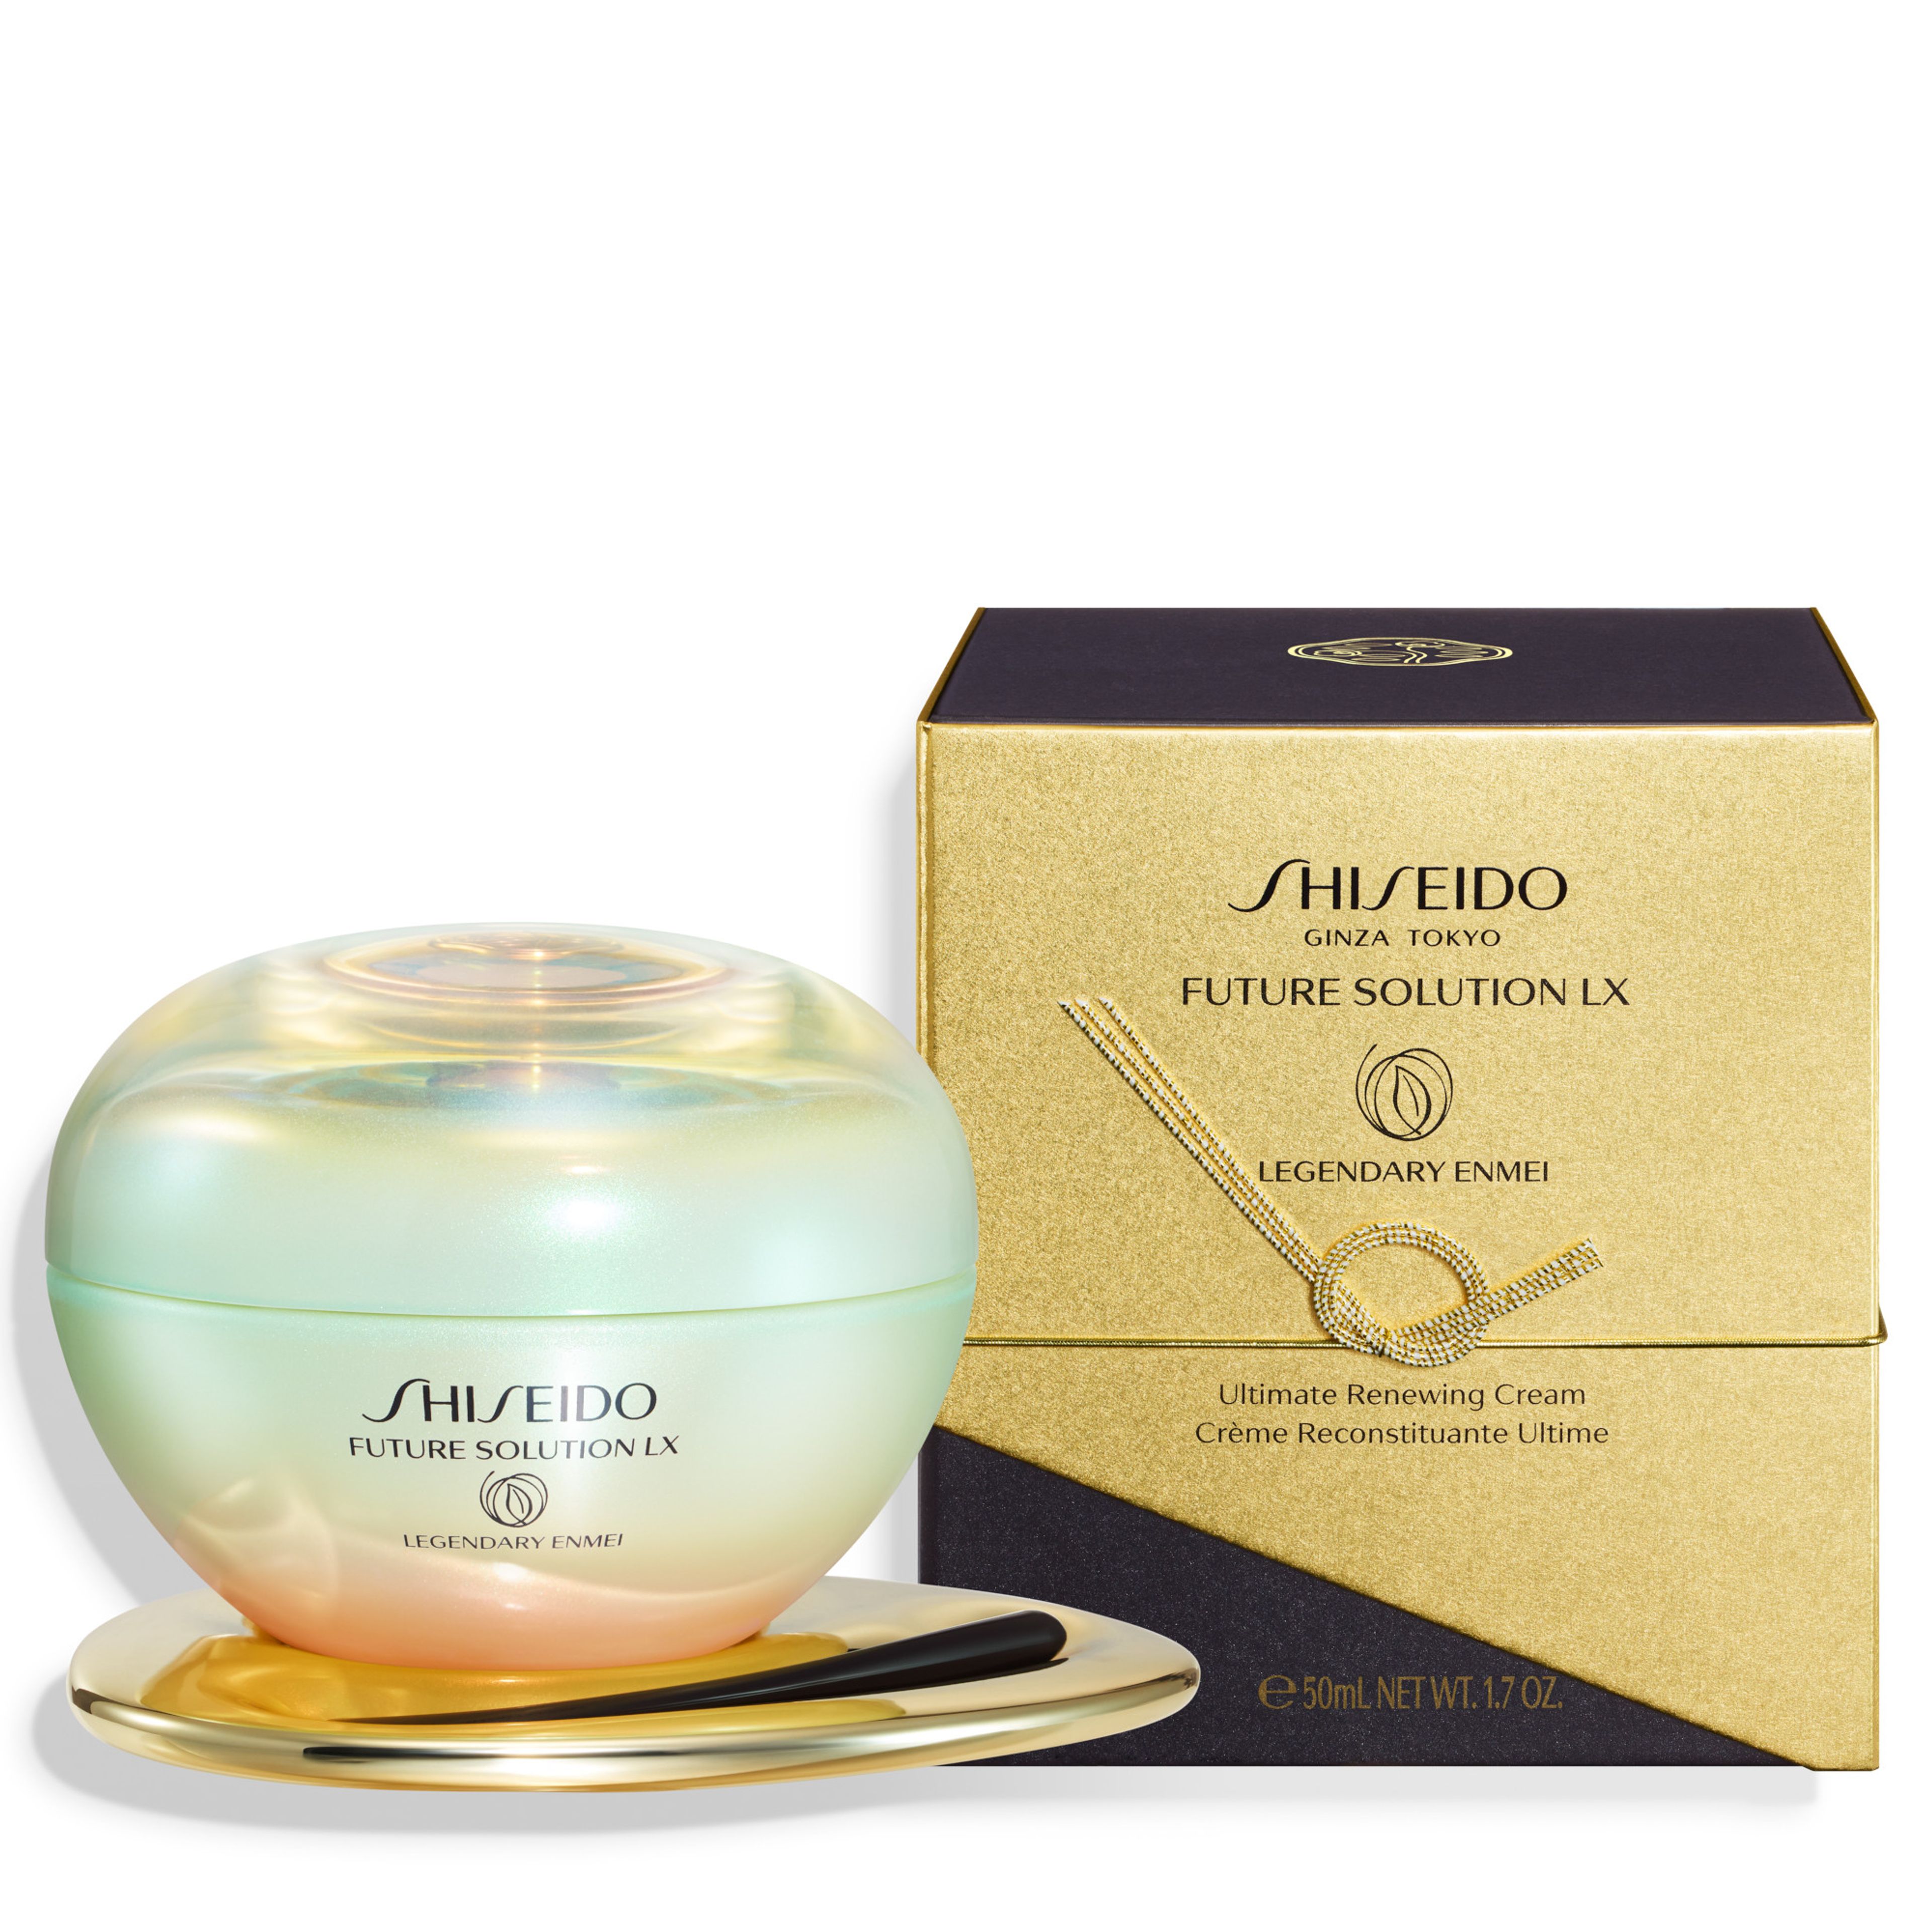 Shiseido Legendary Enmei Ultimate Renewing Cream 7